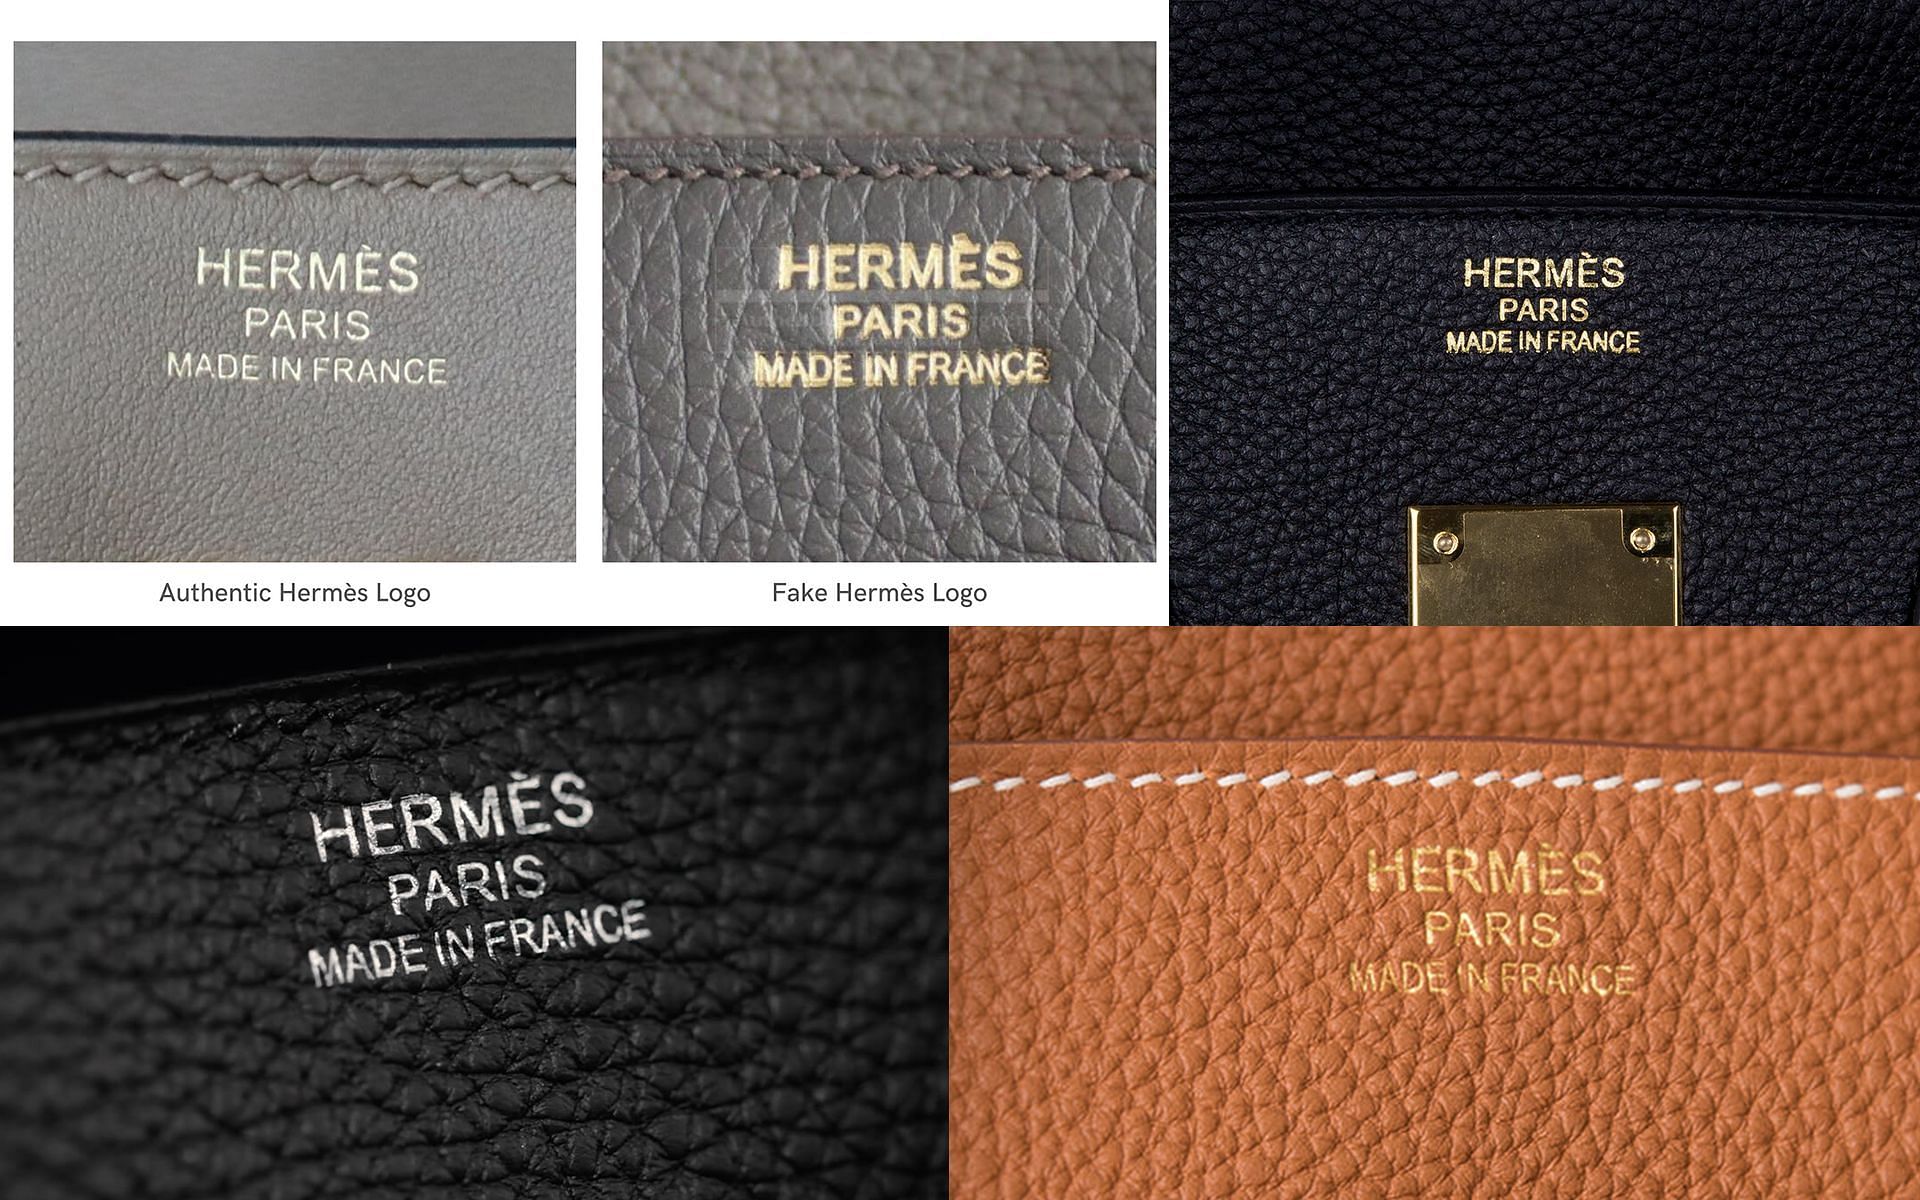 How to authenticate a Hermès Birkin bag? Sarah Jessica Parker reveals ...